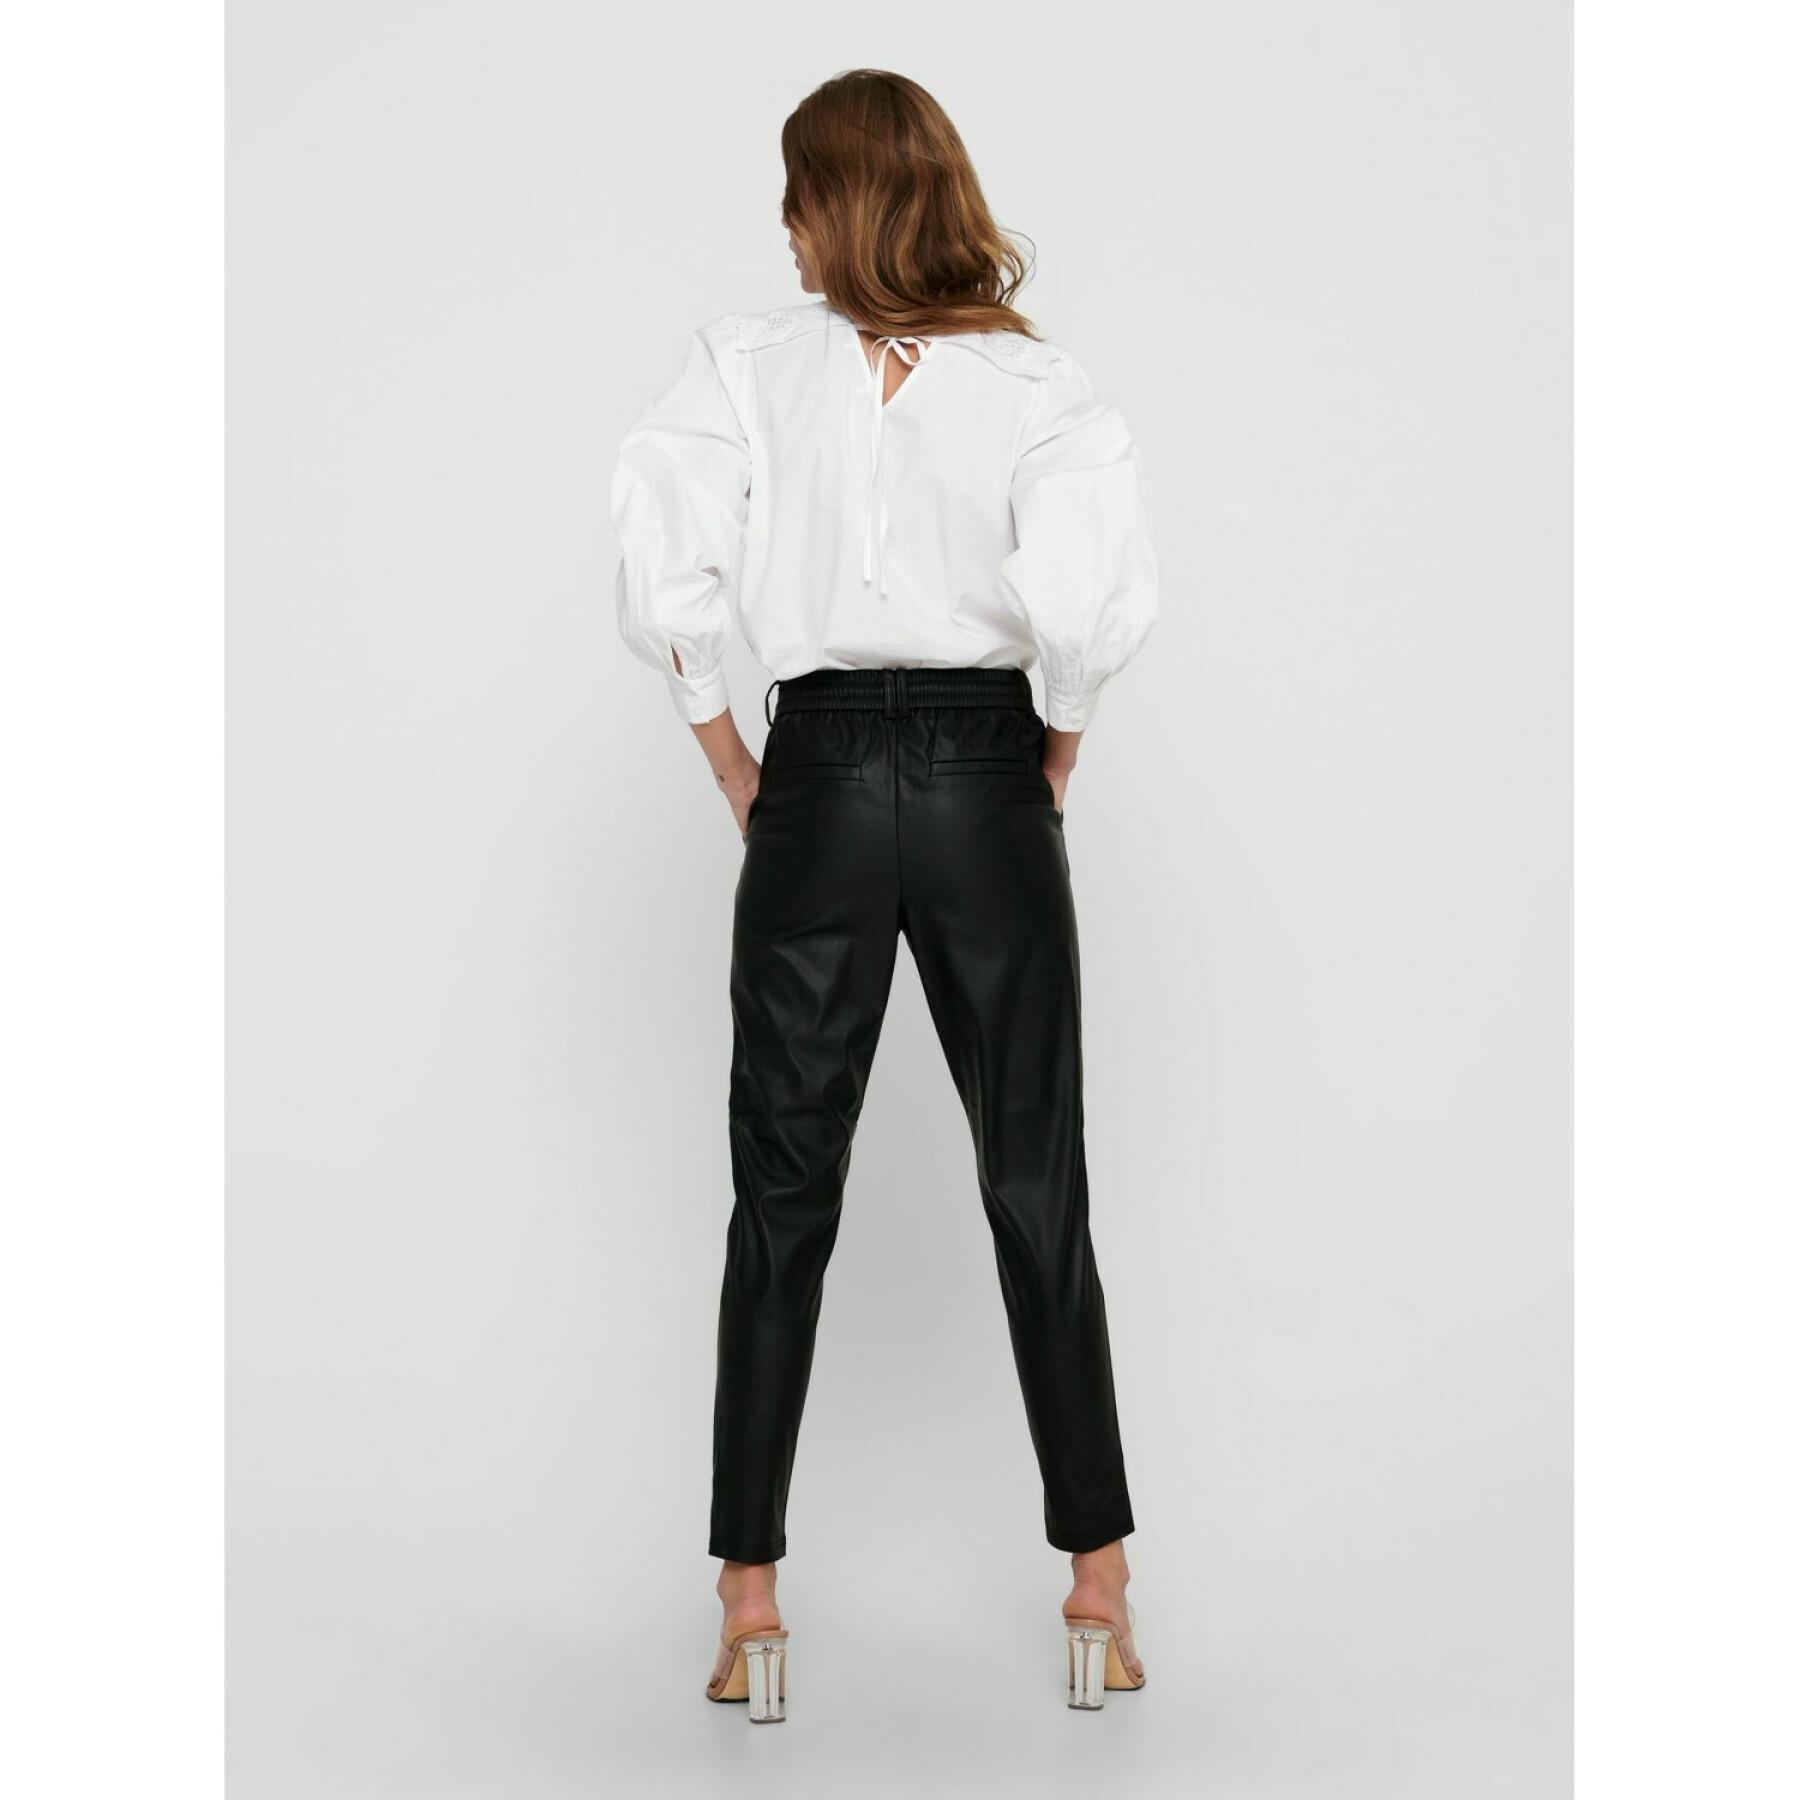 Pantalones de mujer Only onlpoptrash leather pnt